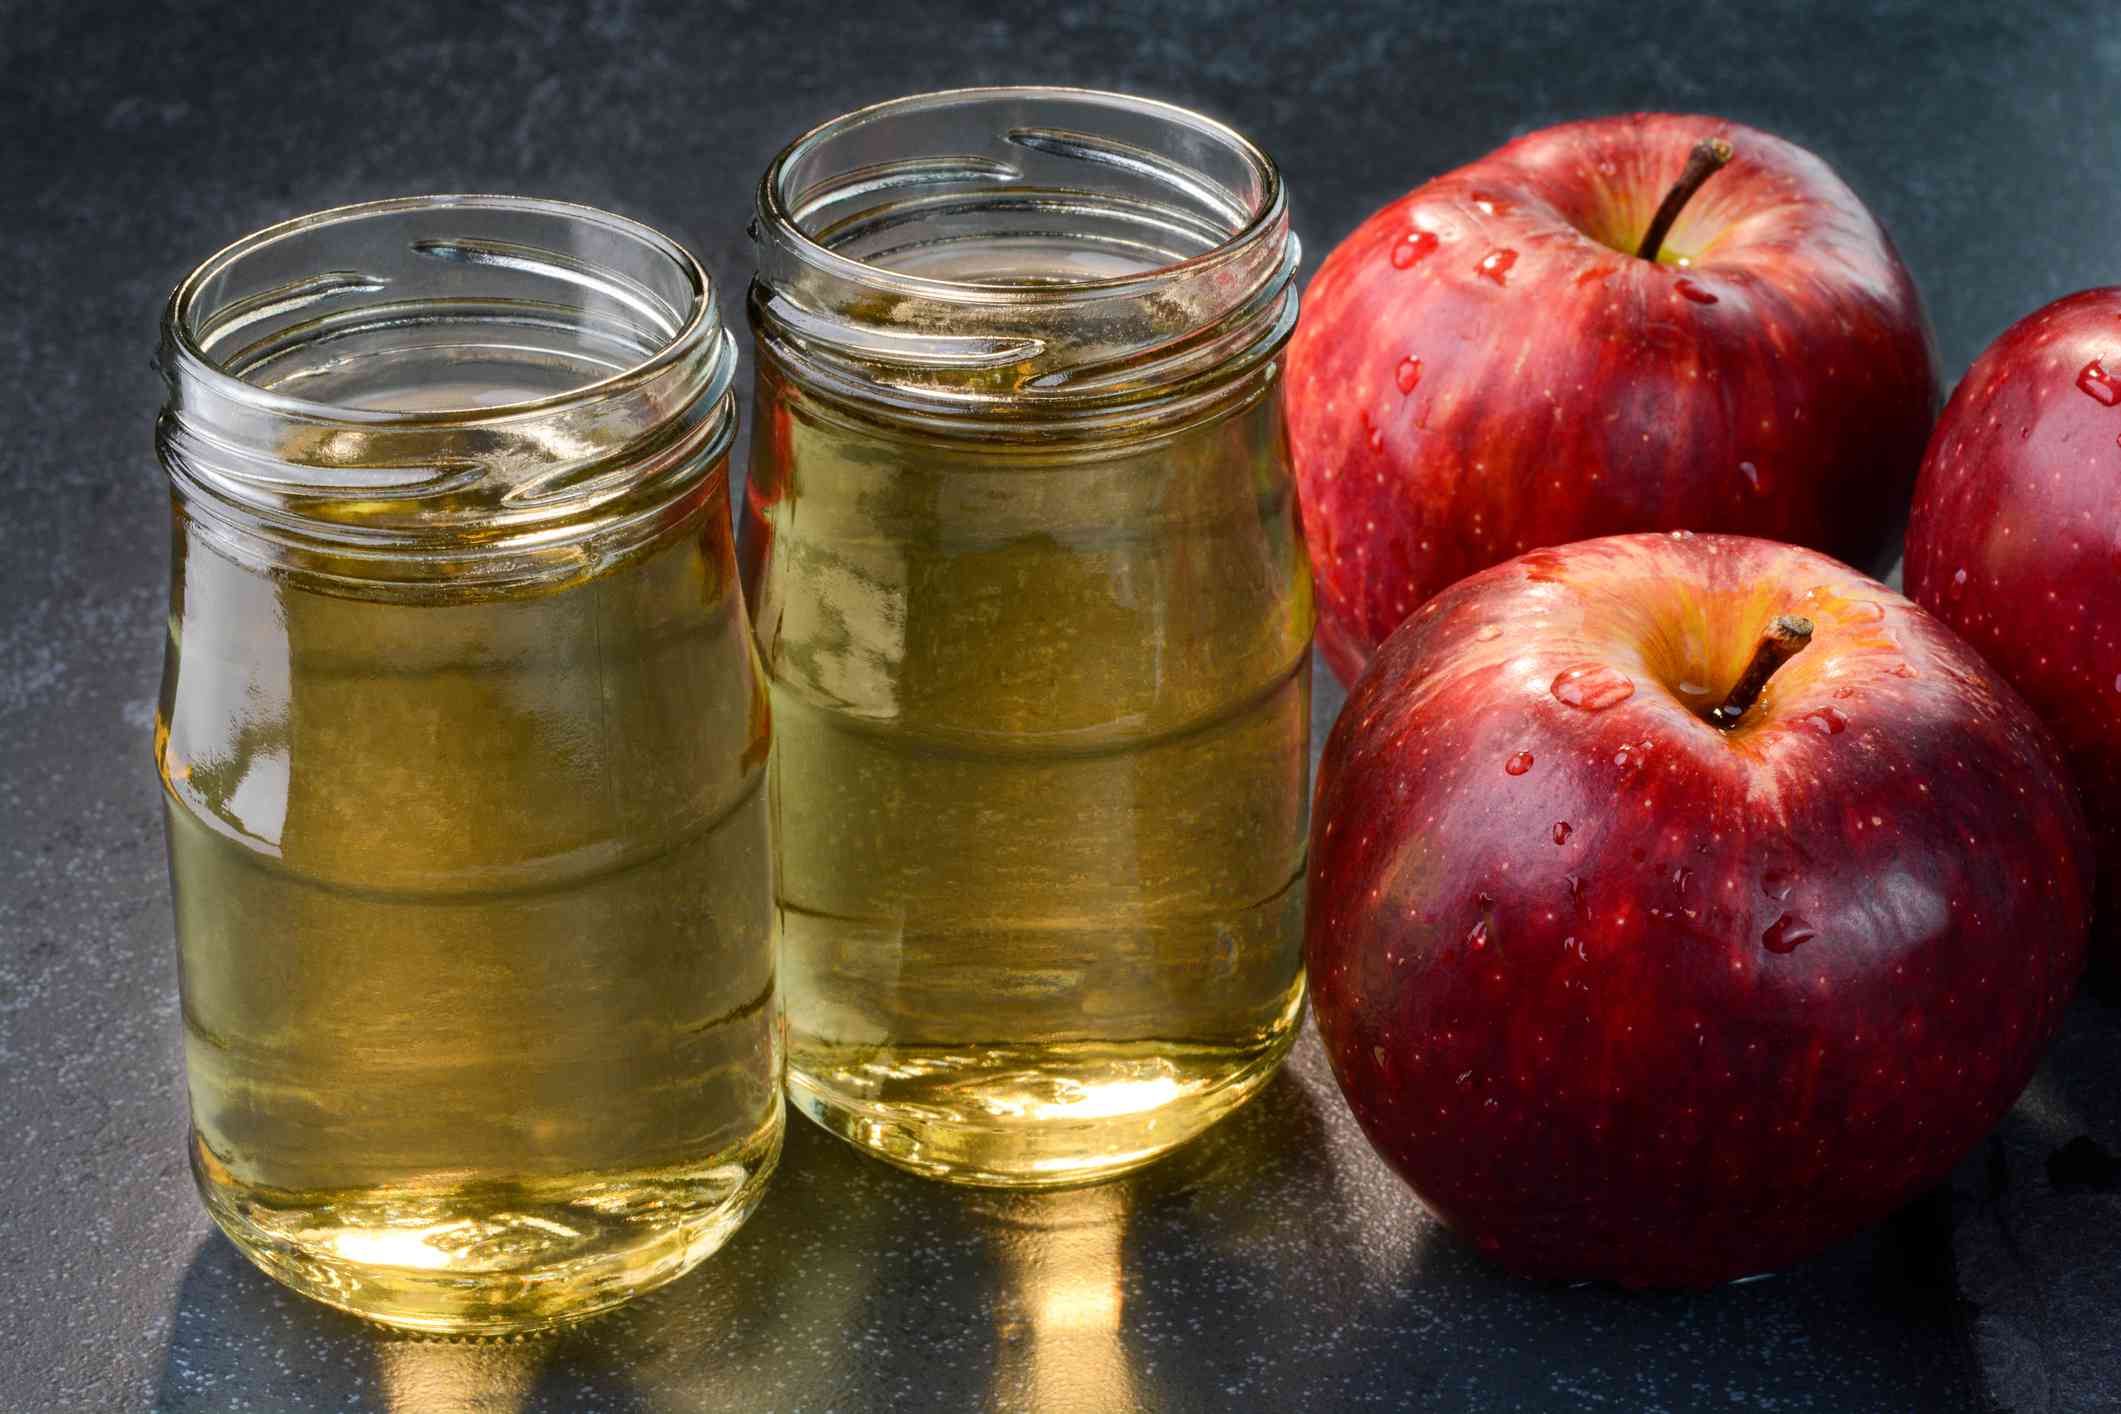 两个小罐子苹果醋坐在接下来的两个三个苹果被水滴覆盖“width=